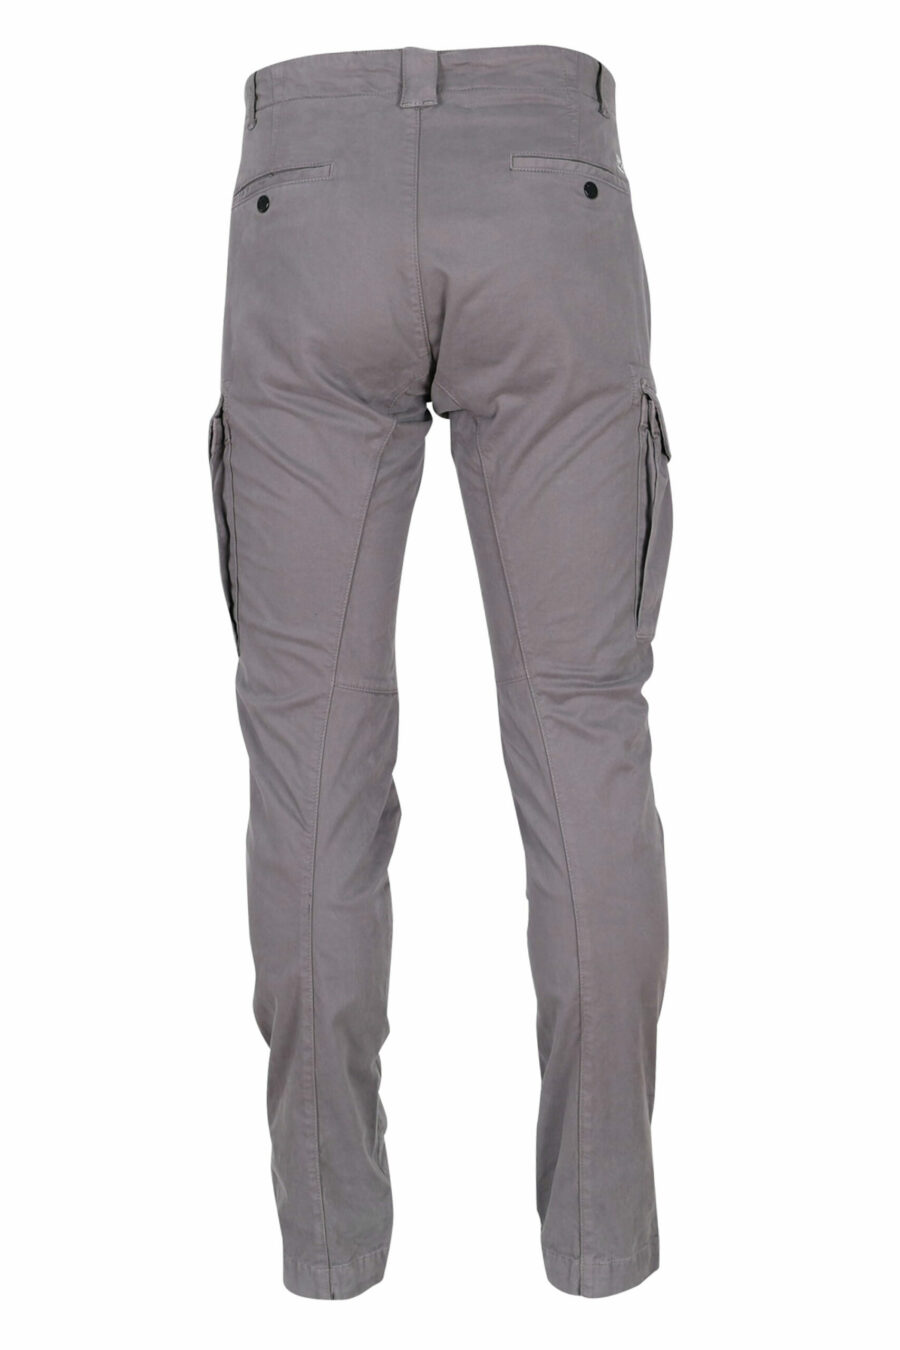 C.P. Company - Pantalon cargo gris anthracite en satin stretch et